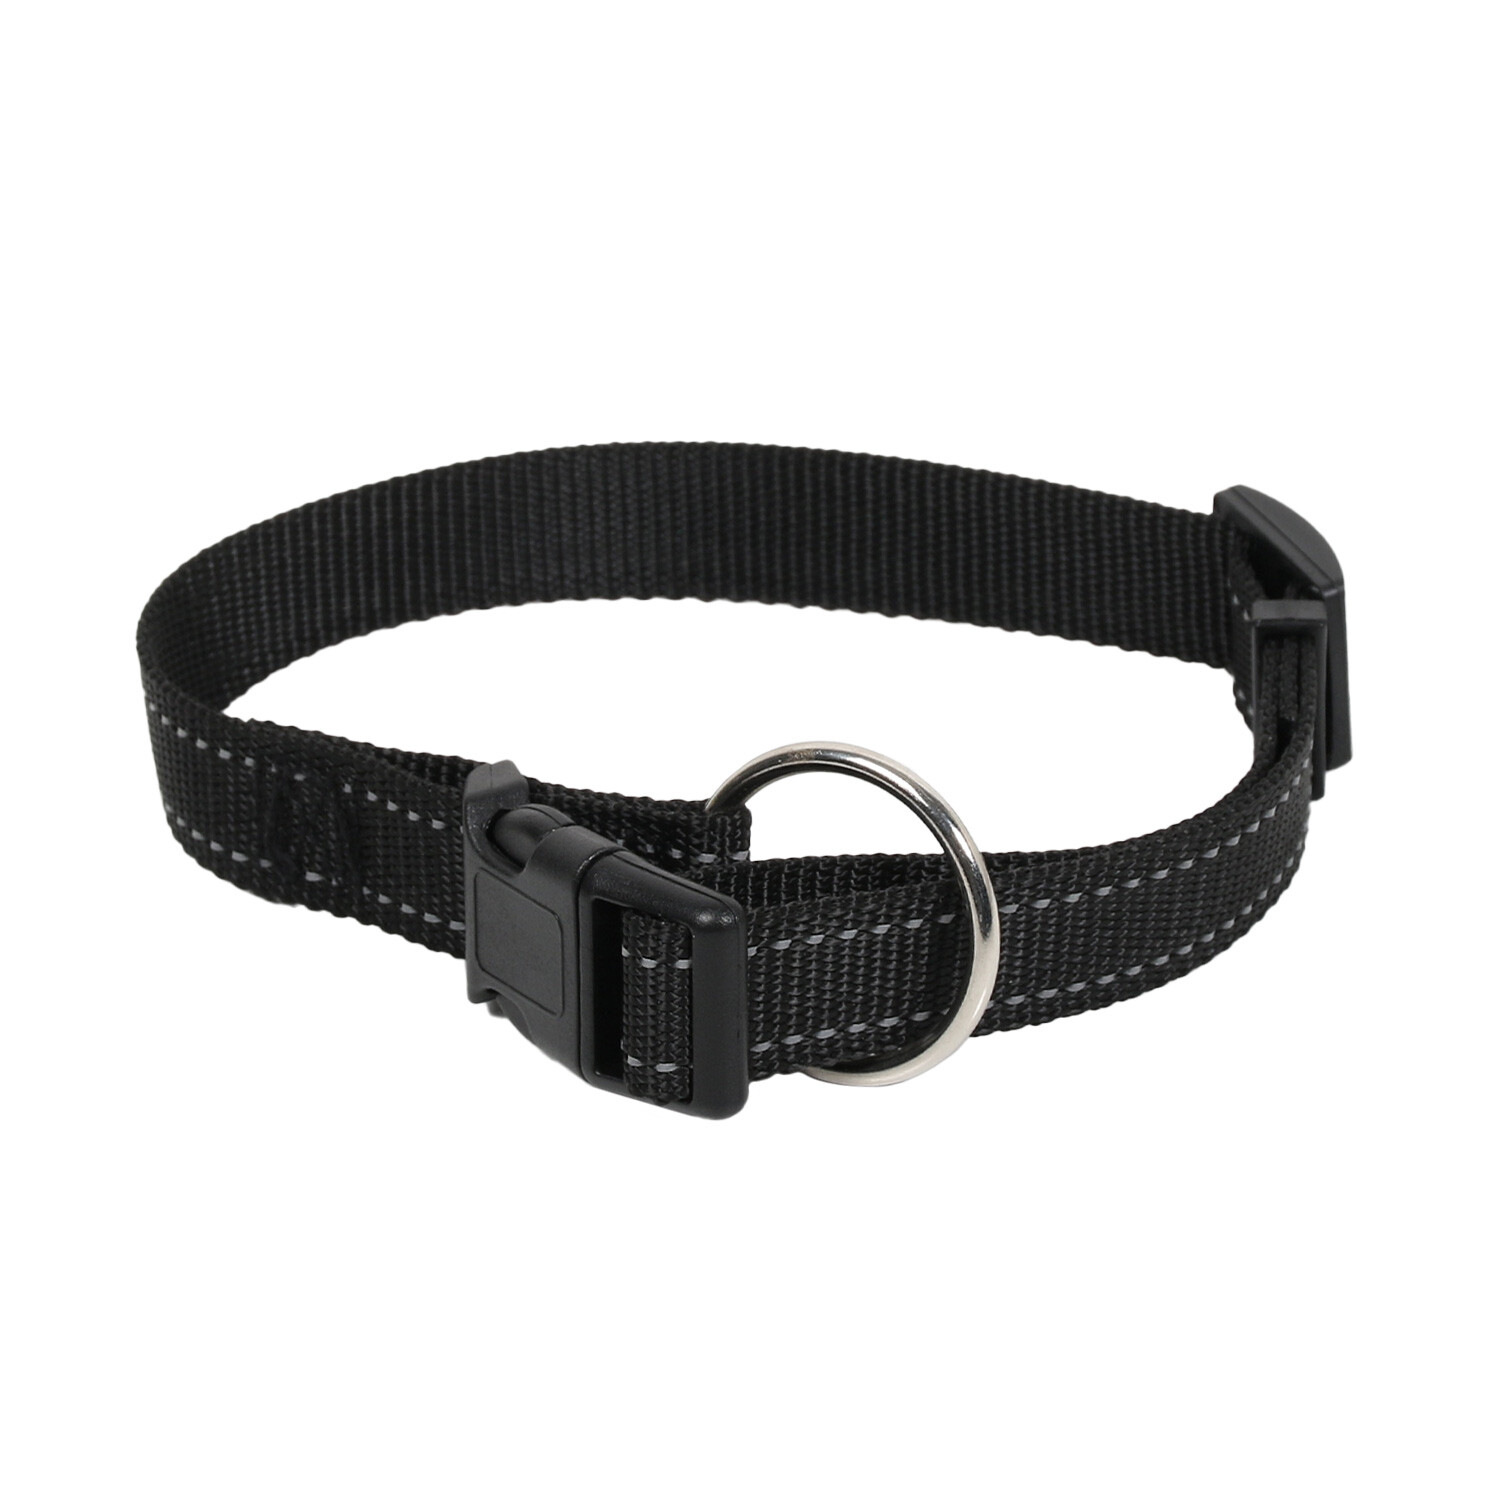 Reflective Nylon Dog Collar - Black / Large Image